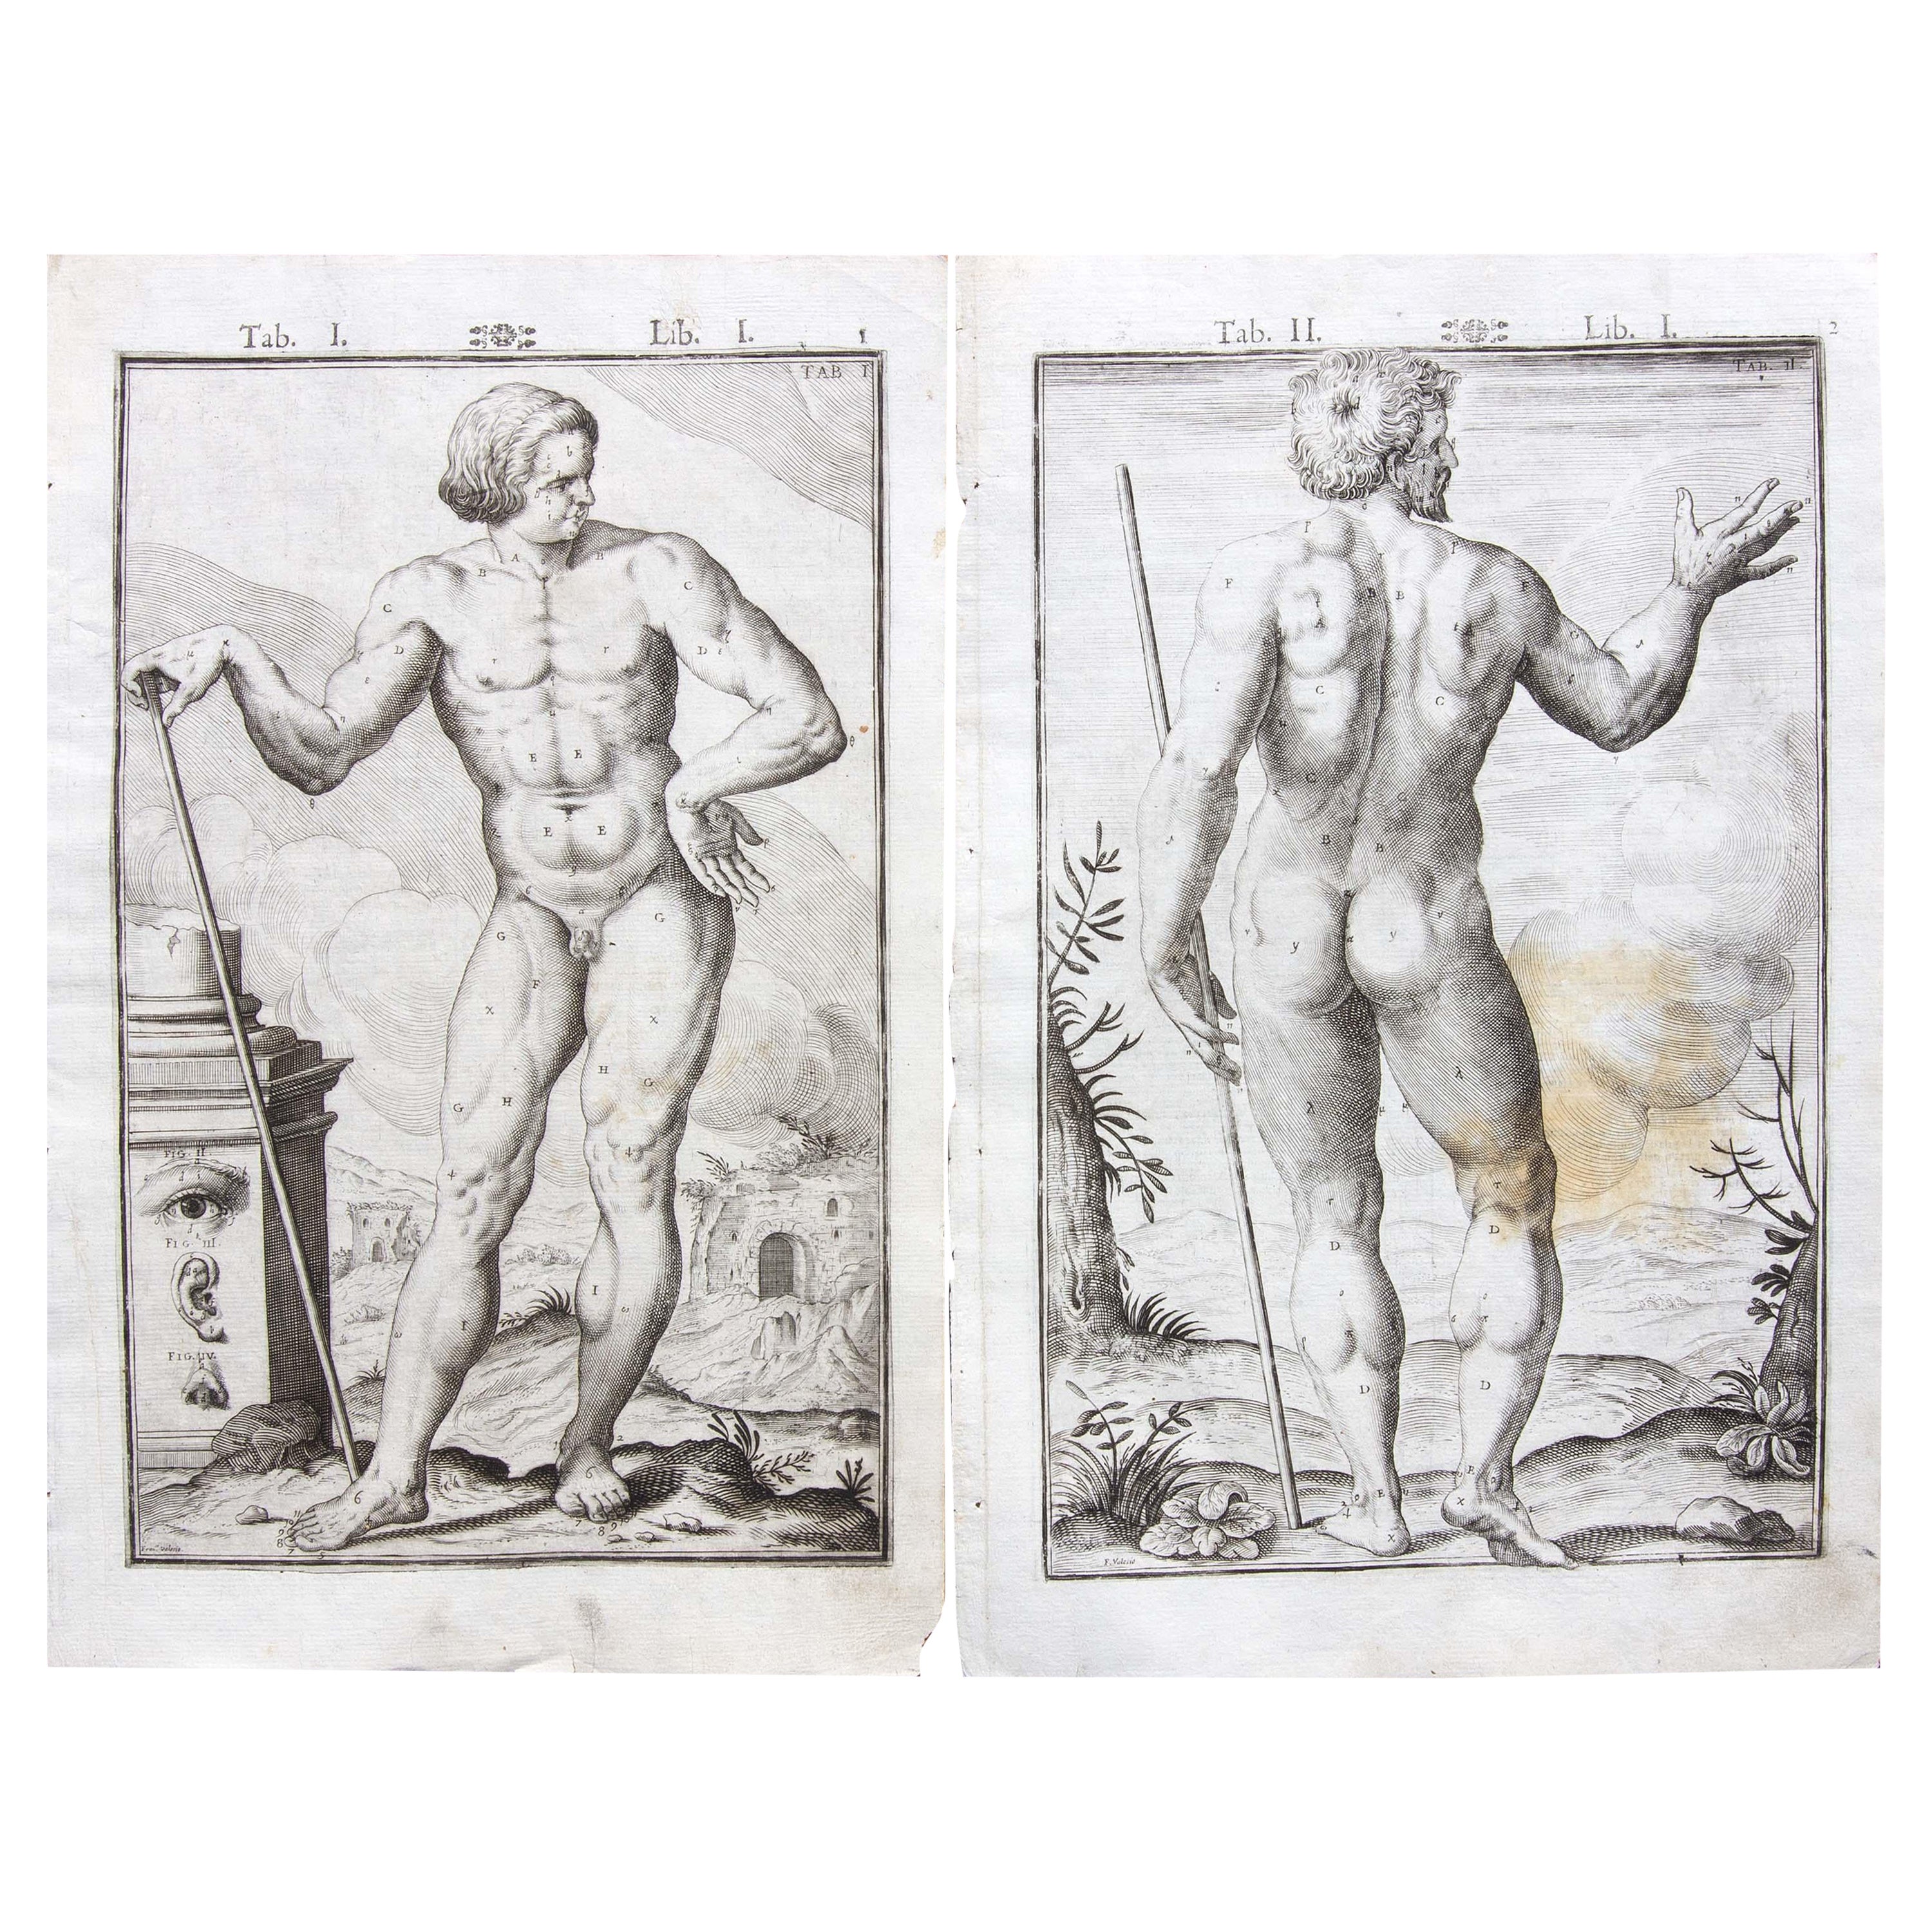 Ein Paar medizinische Anatomie-Stiche des 17. Jahrhunderts von Francesco Valesio